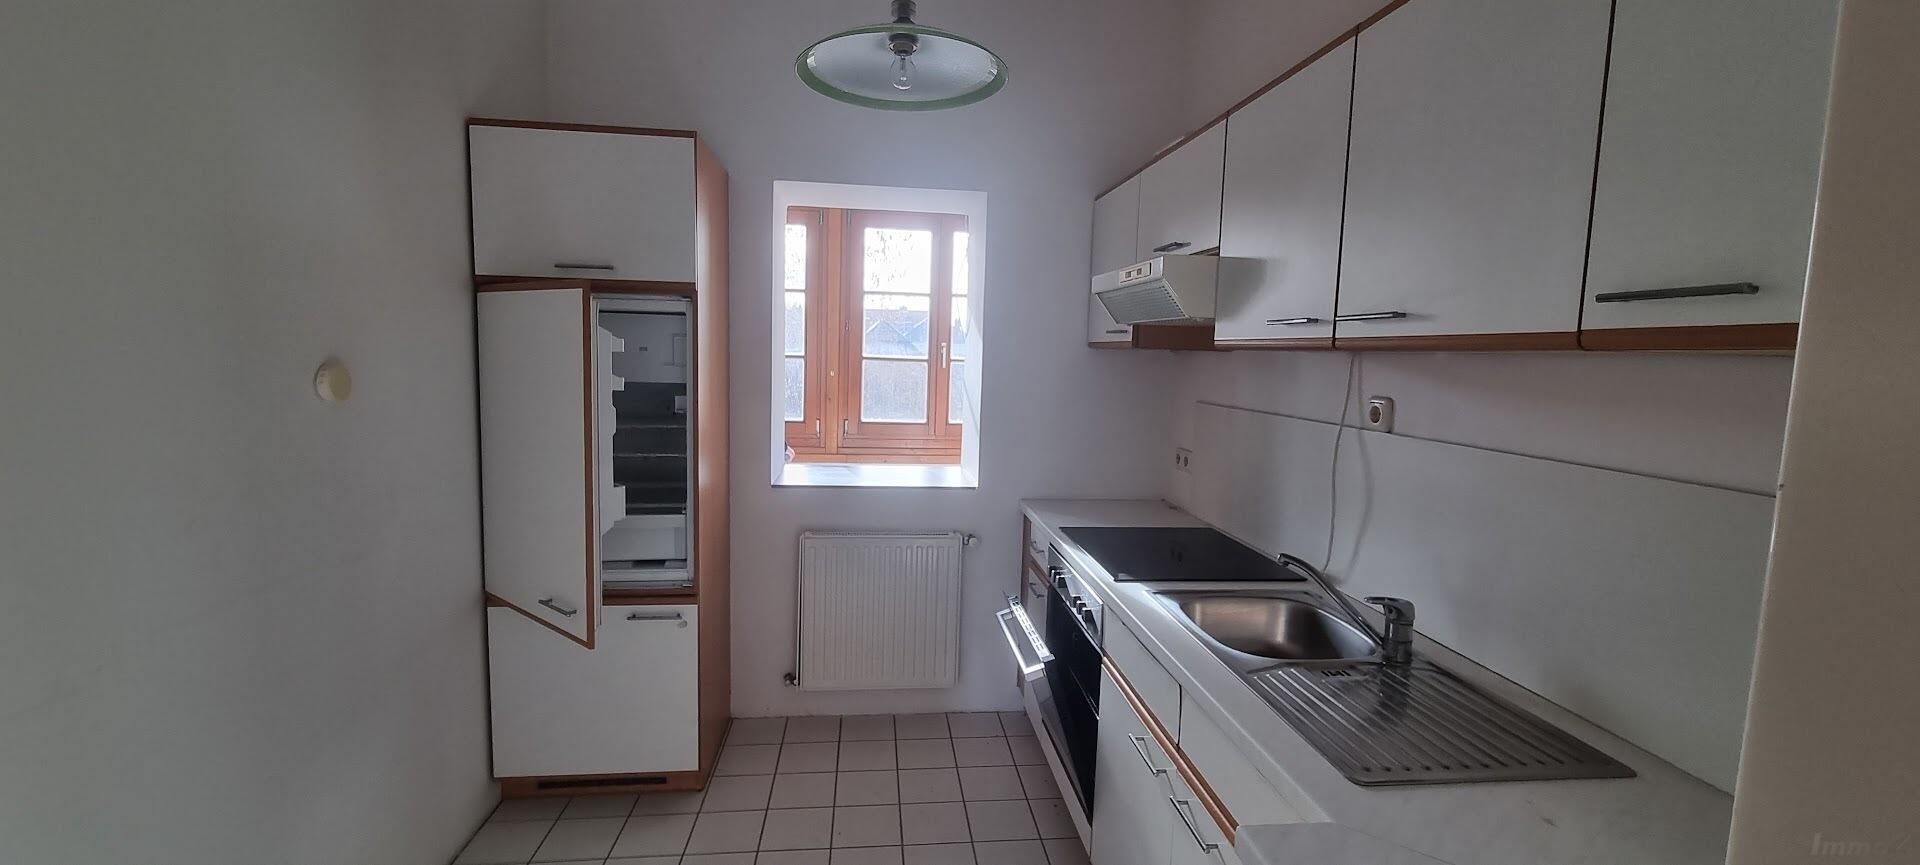 Wohnung zu mieten: 8020 Graz,14.Bez.:Eggenberg - Eckertgasse 45 1.OG Küche